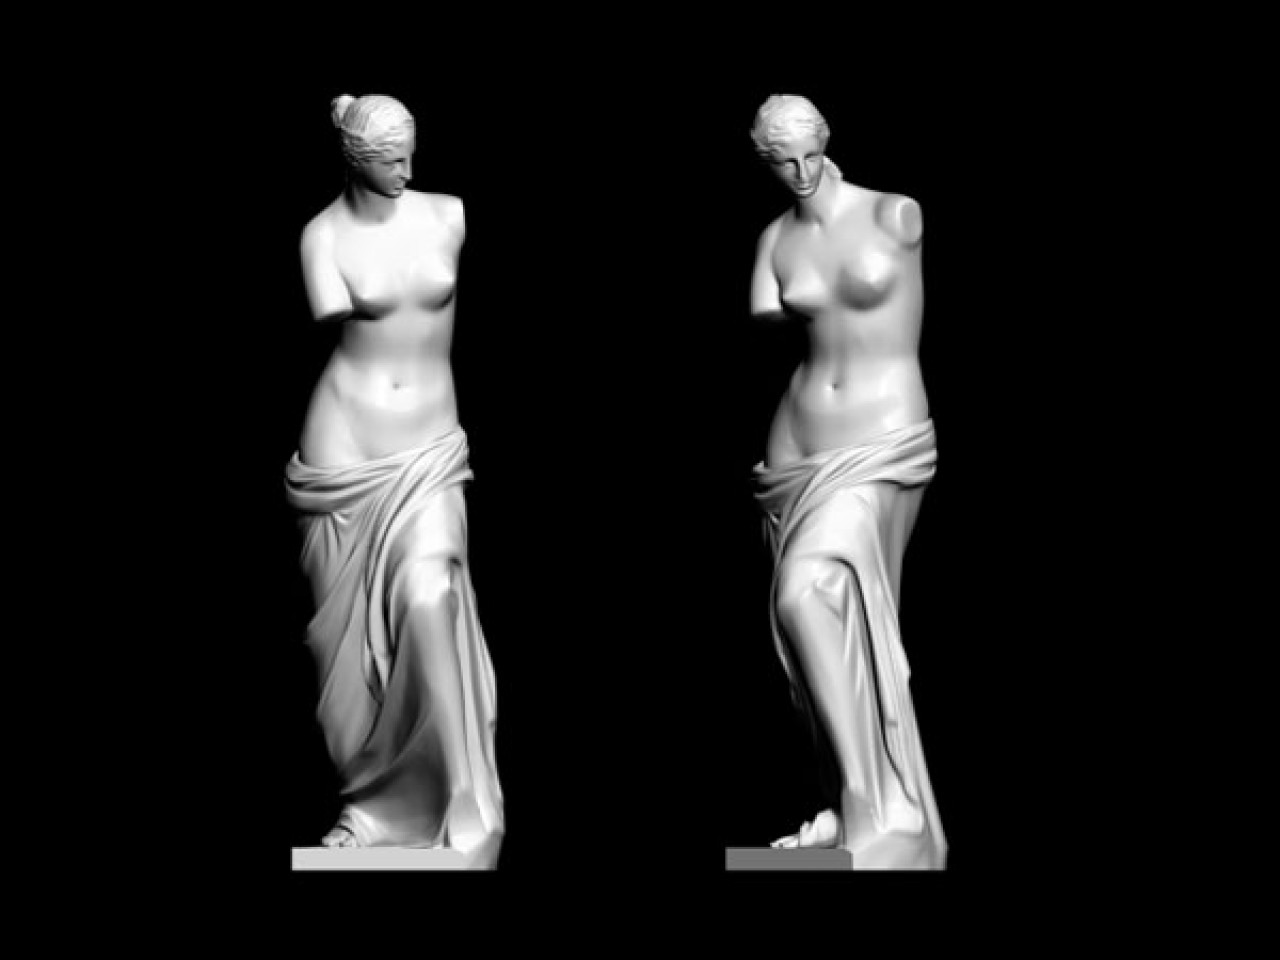 Вакансия моделлера-скульптора (скульптинг, дизайн, визуализация, анимация)